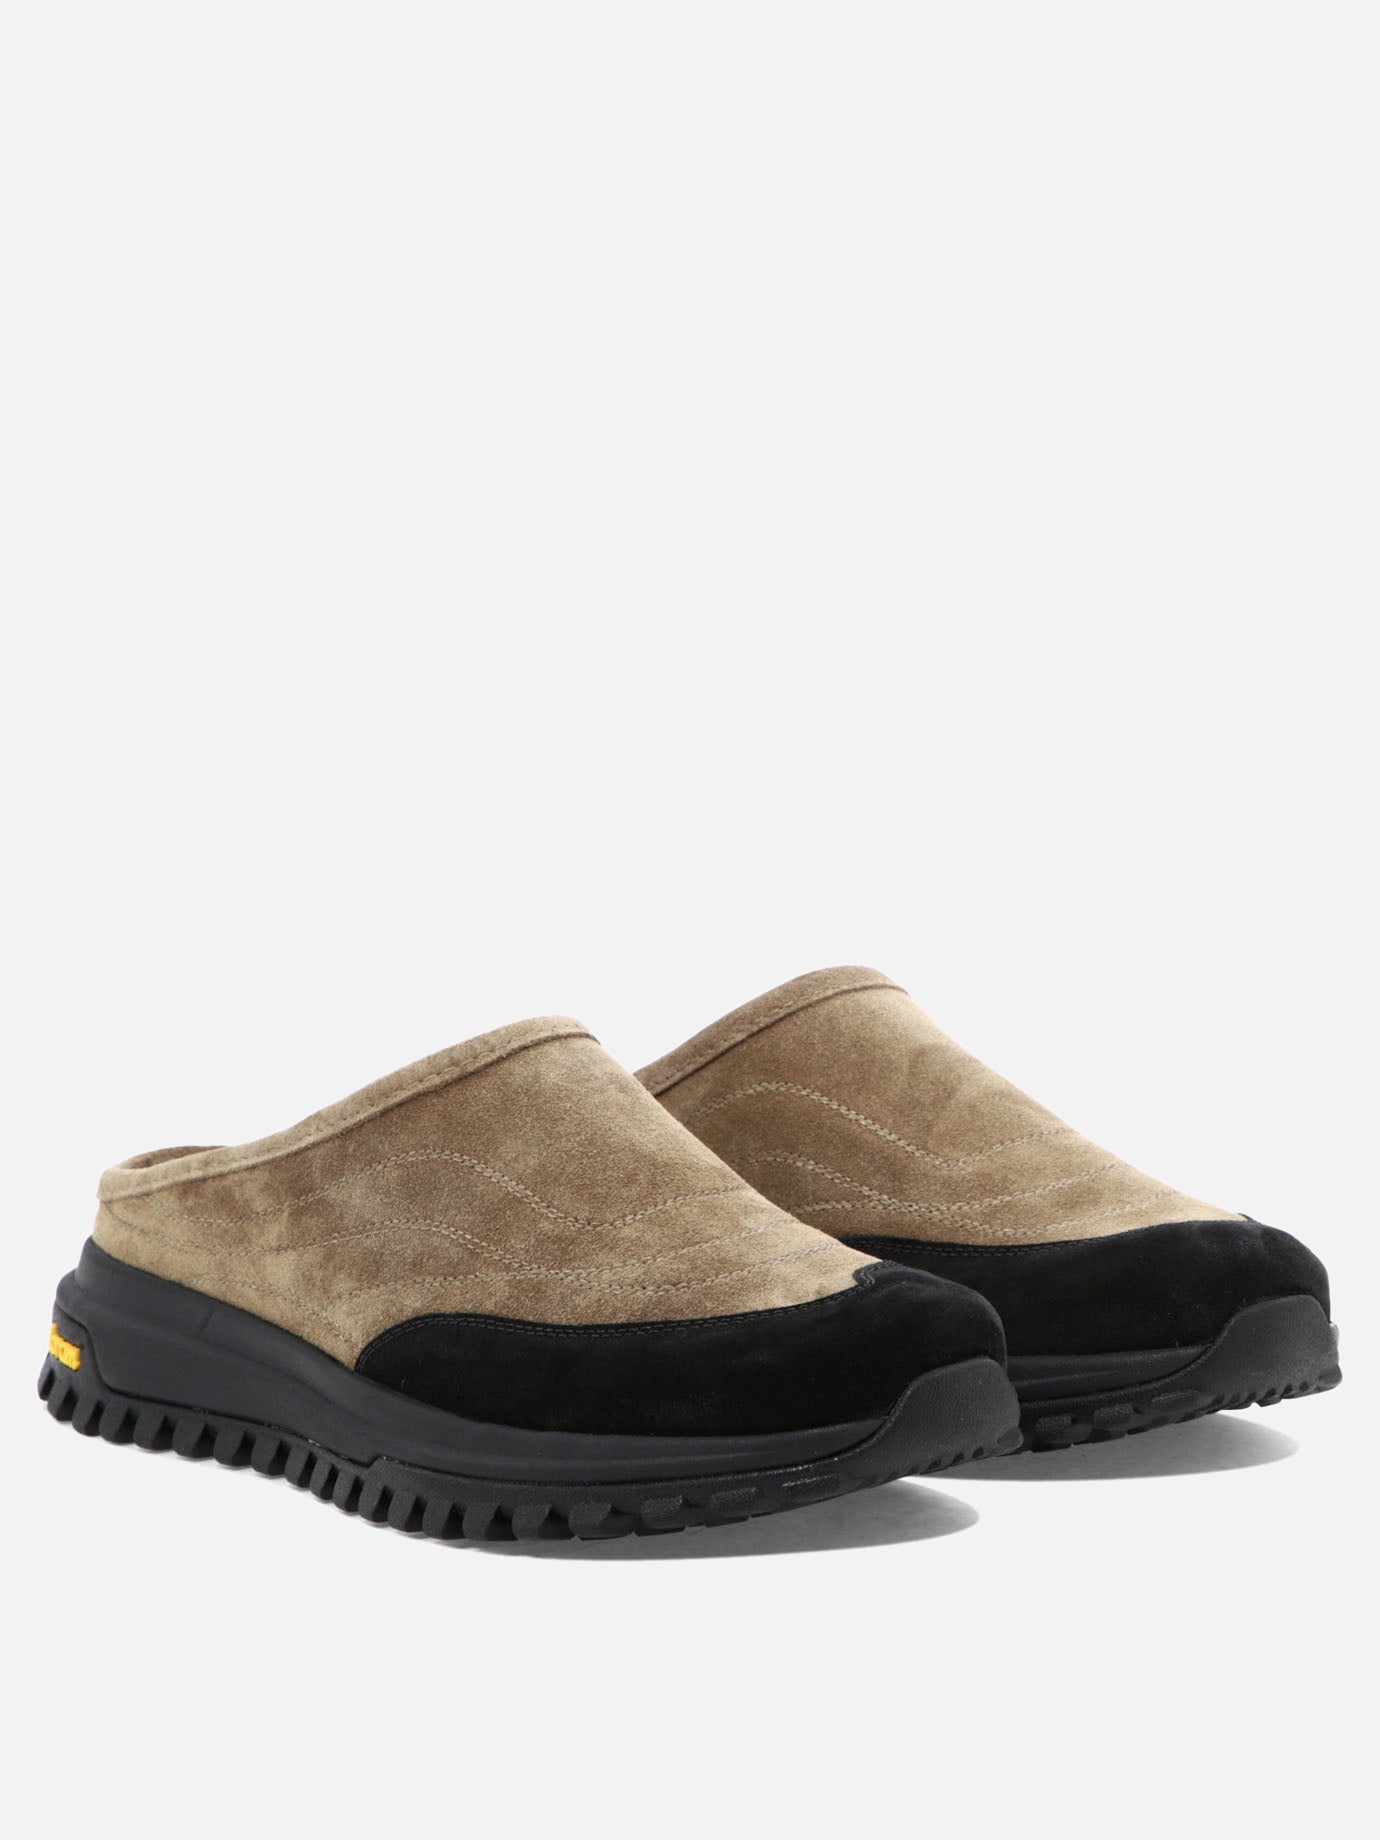 "Maggiore" slippers